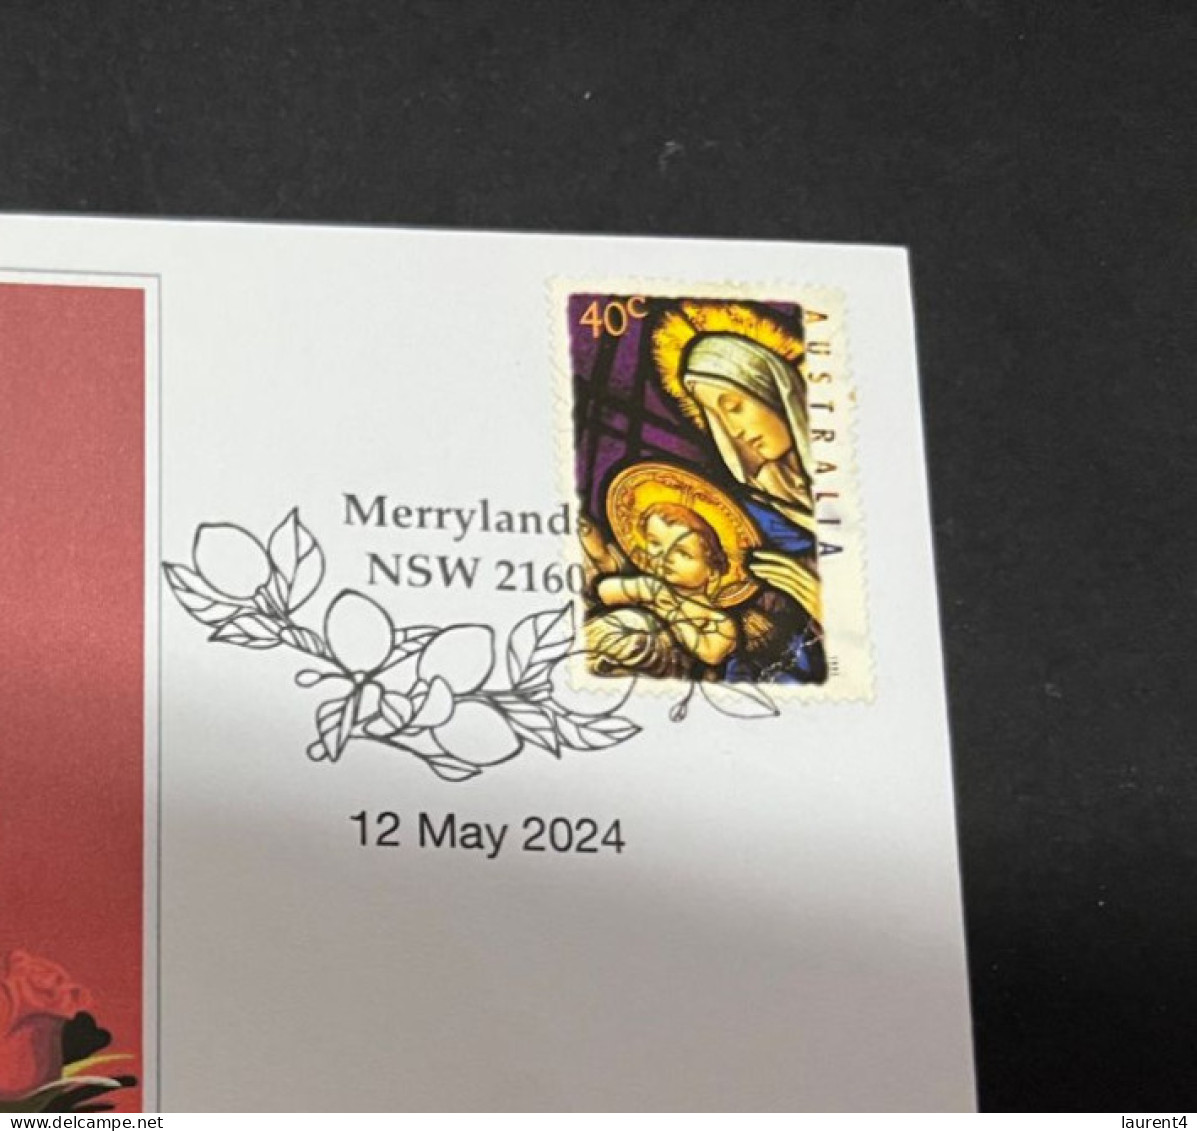 12-5-2024 (4 Z 47A) Mother's Day 2024 (12-5-2024 In Australia) Virgin Mary Stamp - Giorno Della Mamma